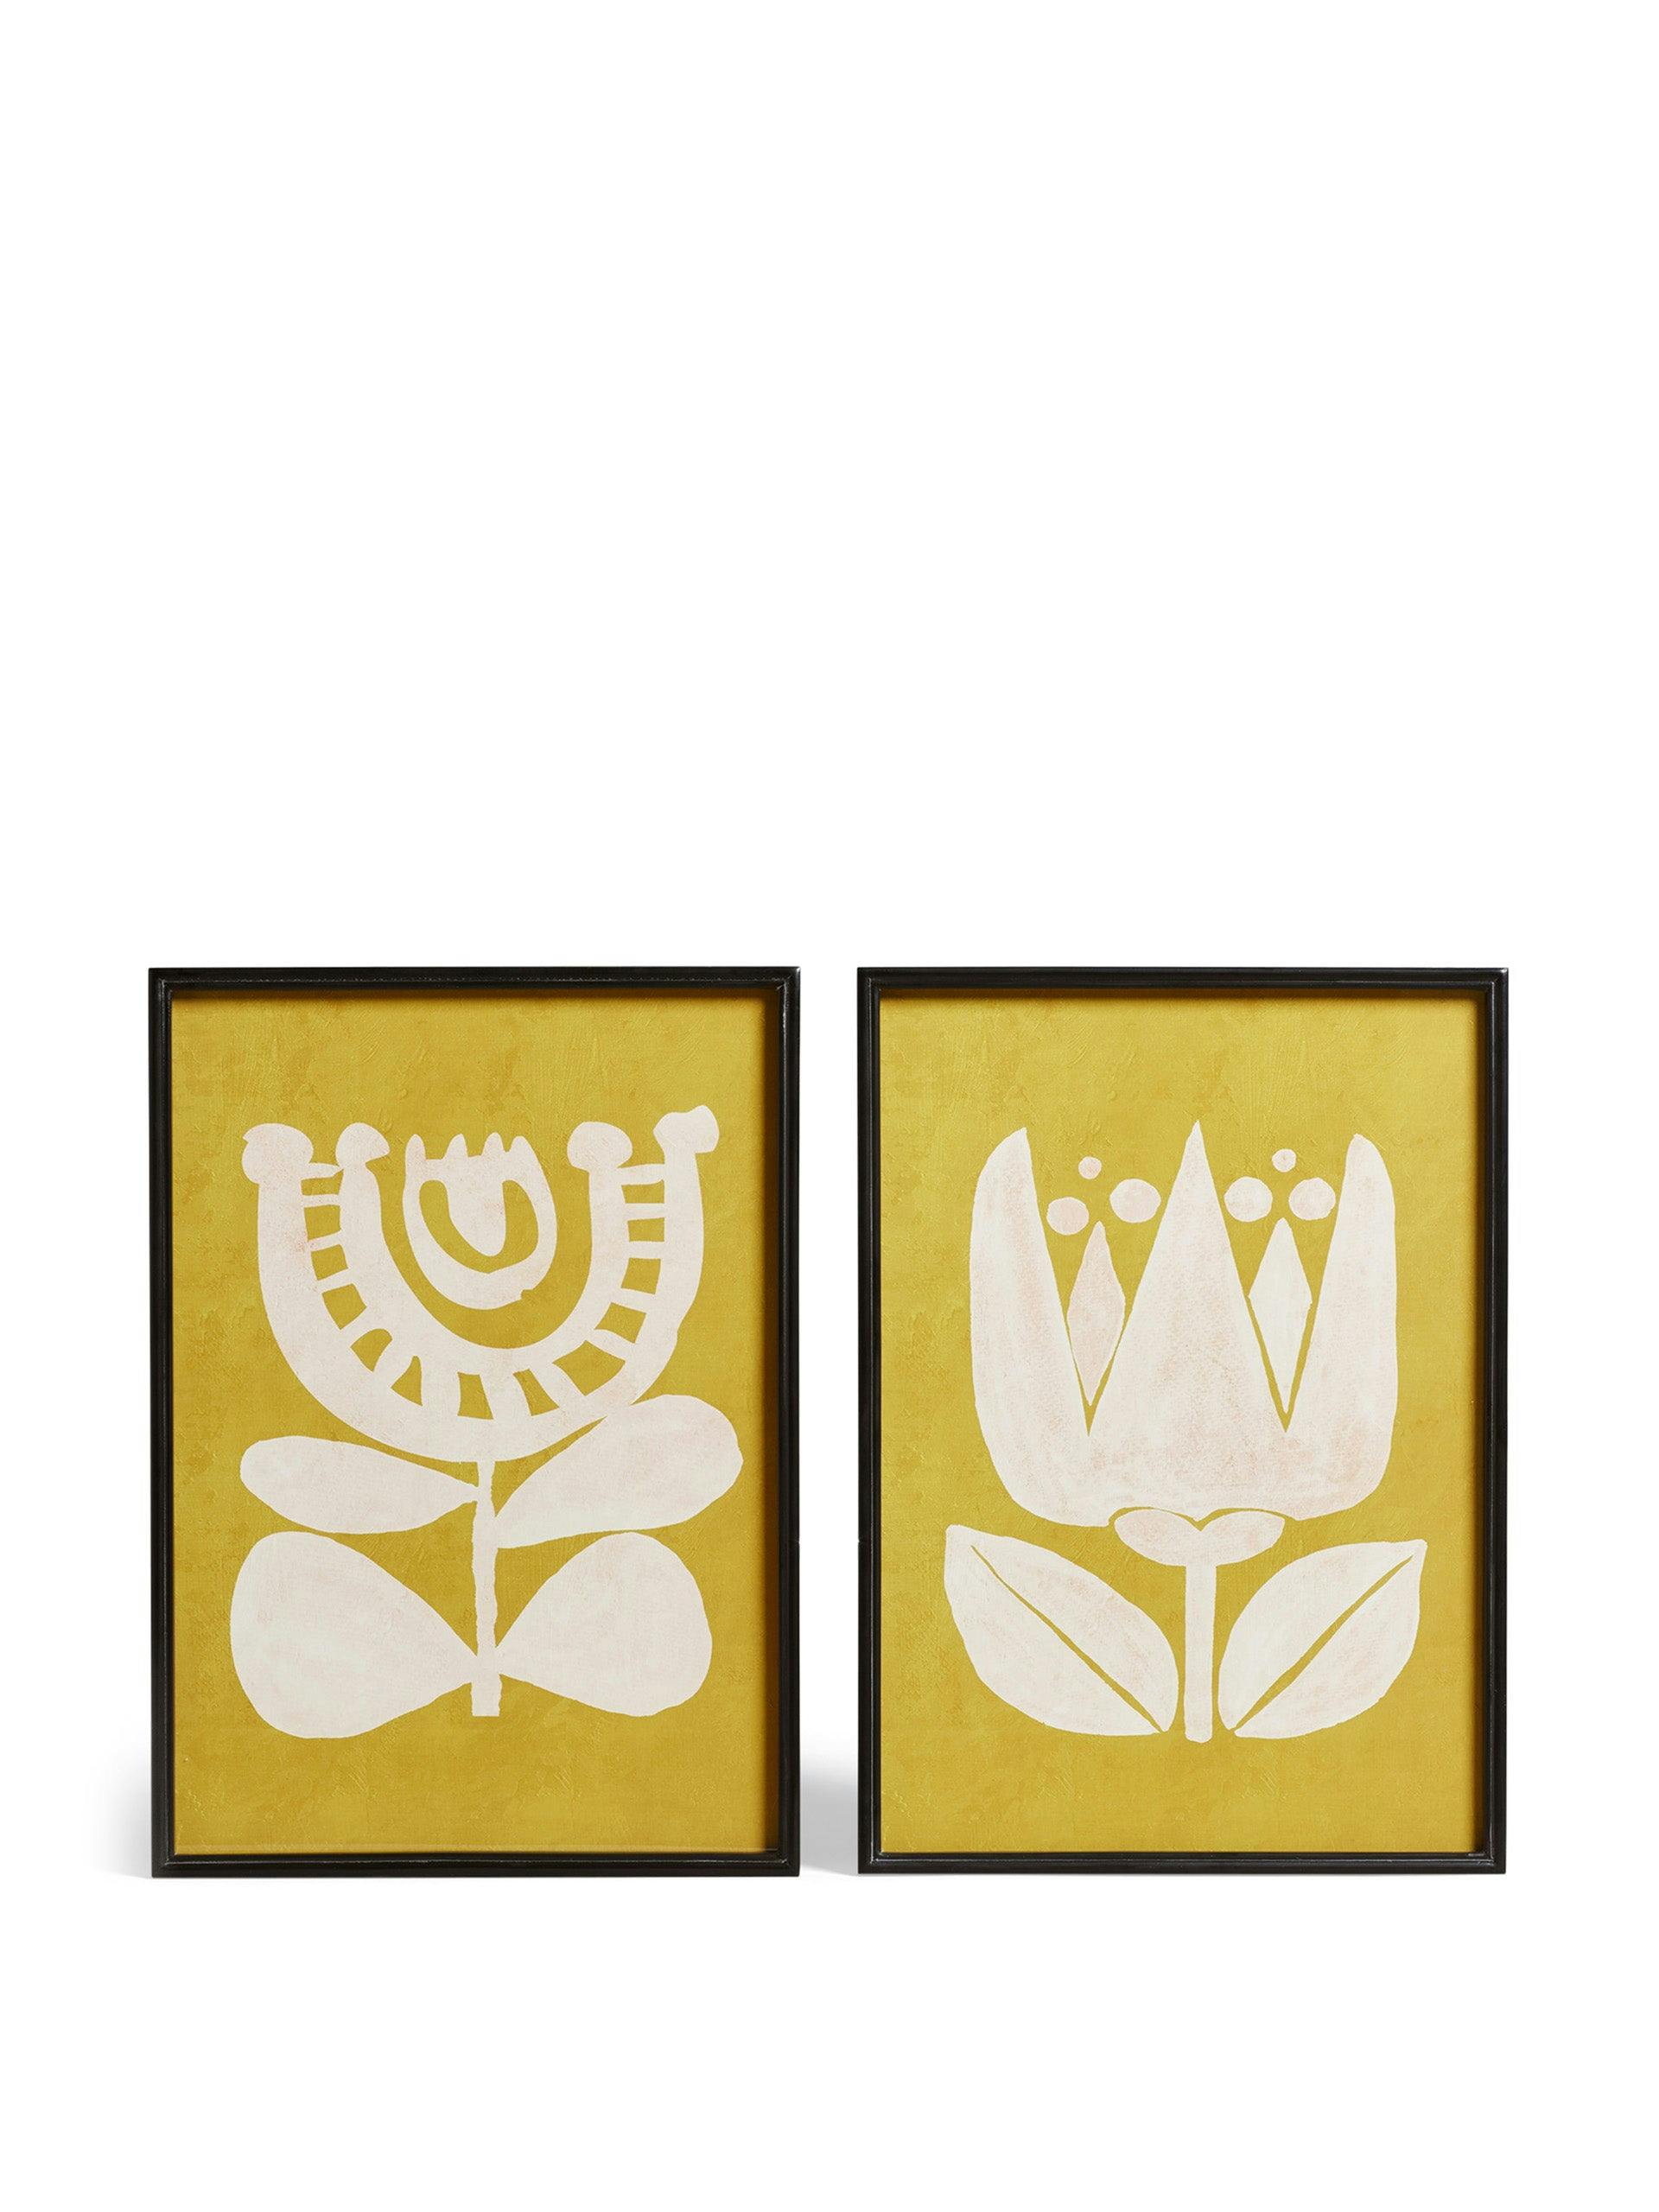 Pair of Eferi prints in ochre